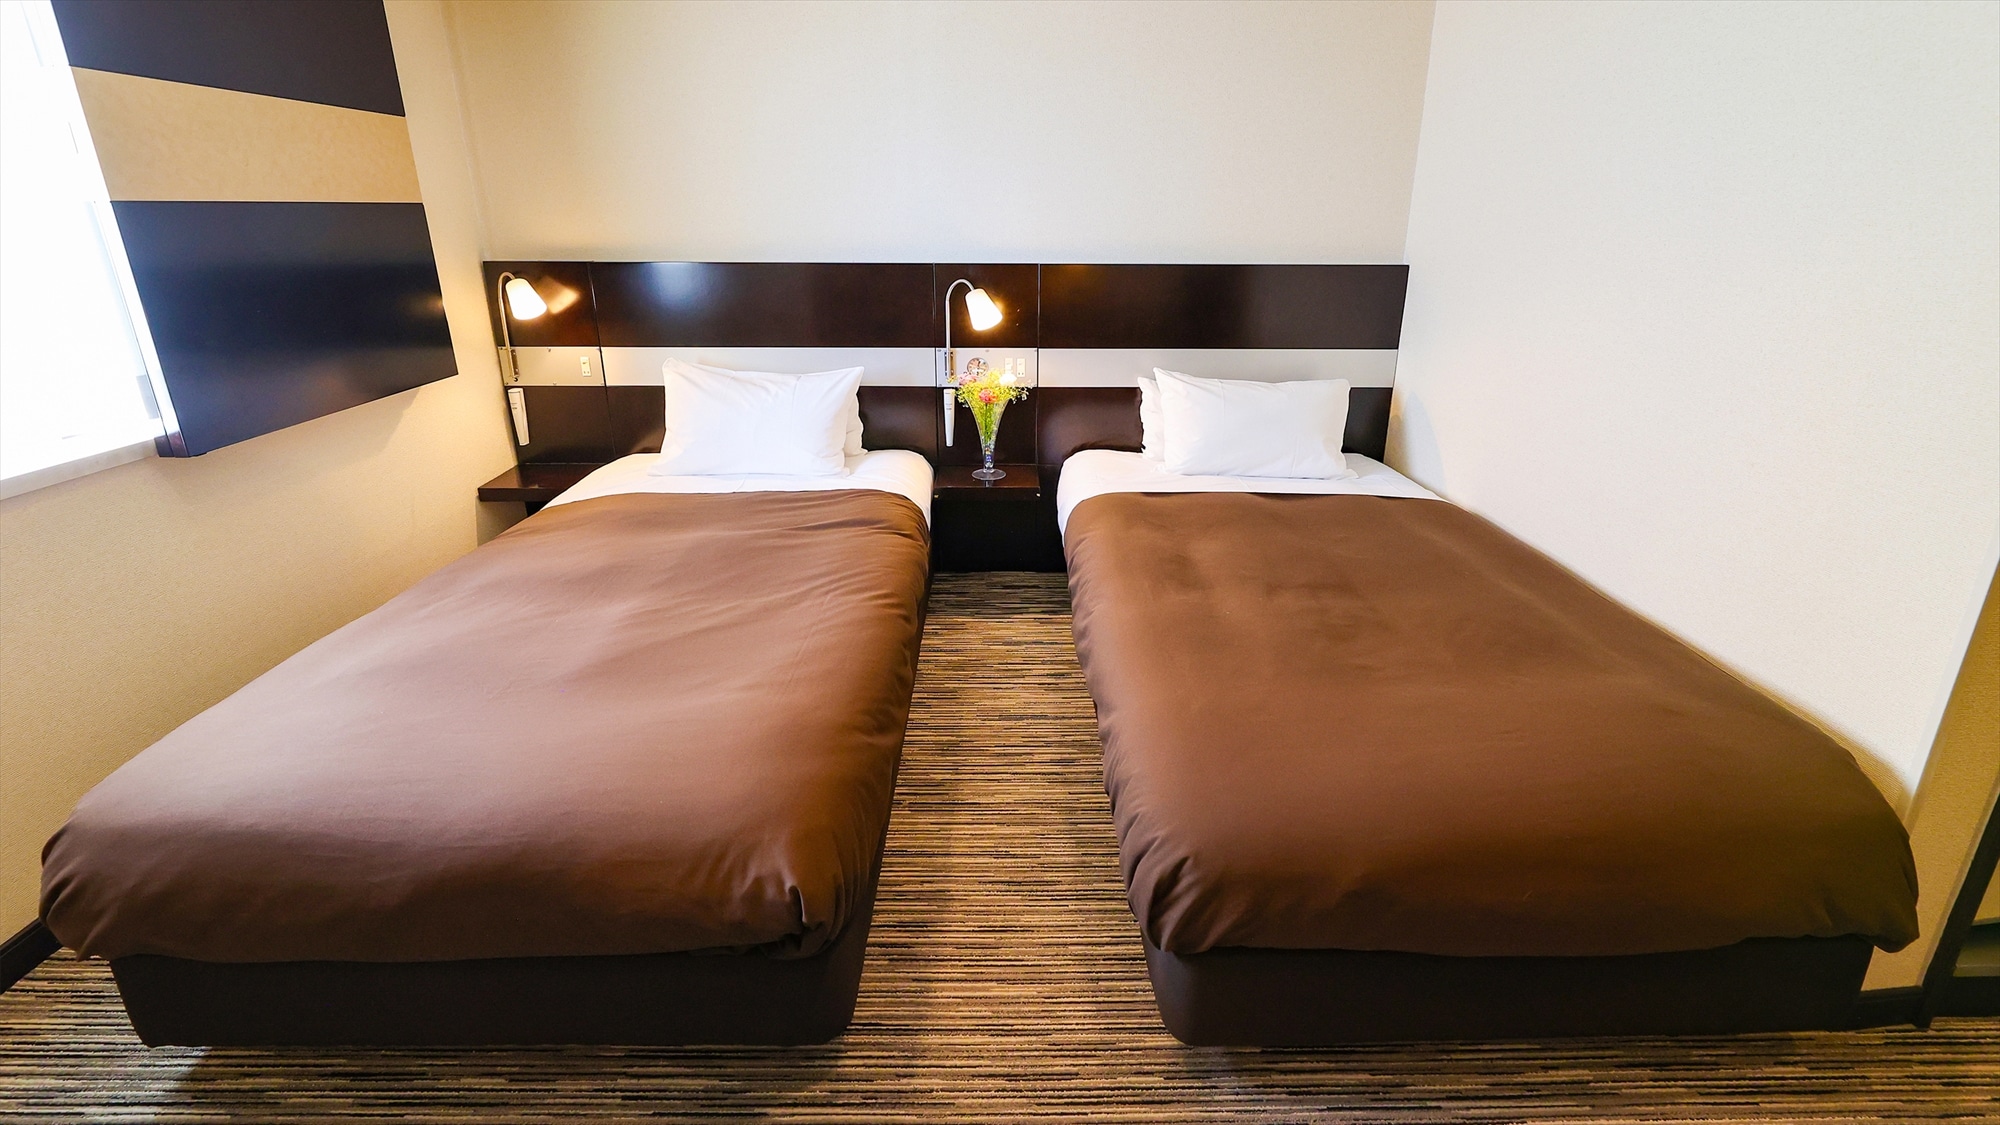 【双床房】两个人畅谈旅行回忆的宽敞空间/17平方米/床宽110厘米